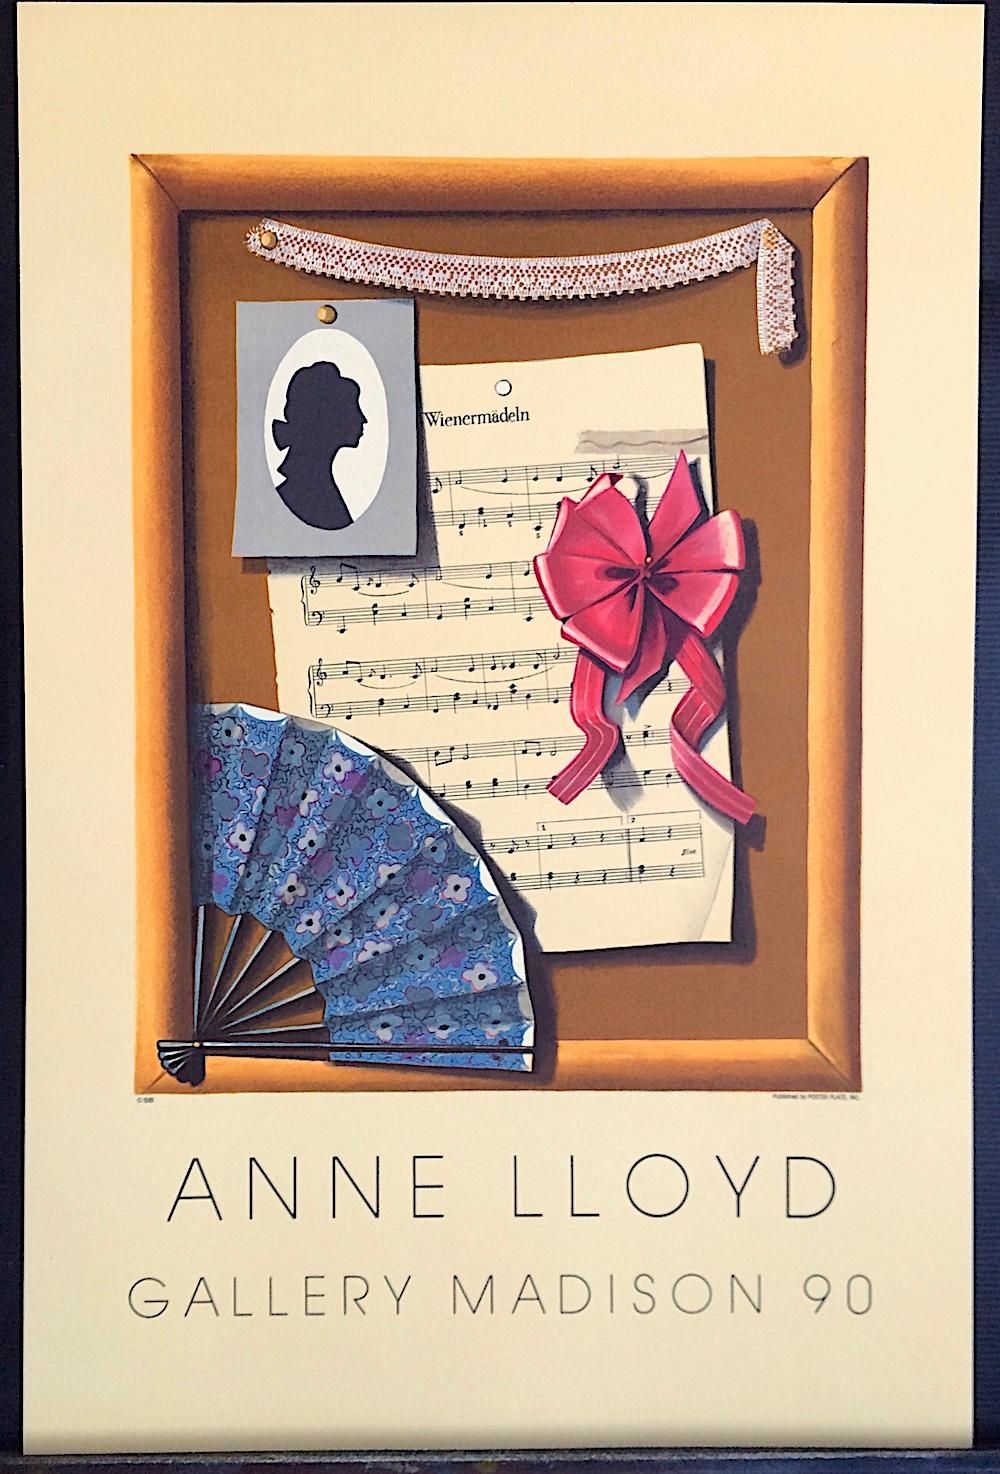 VIENNESE STILL LIFE d'Anne Lloyds est une lithographie en édition limitée dessinée à la main et imprimée à l'aide de techniques de lithographie manuelle sur du papier d'archivage 100 % sans acide. Extrait d'un tirage limité à 300 exemplaires créé